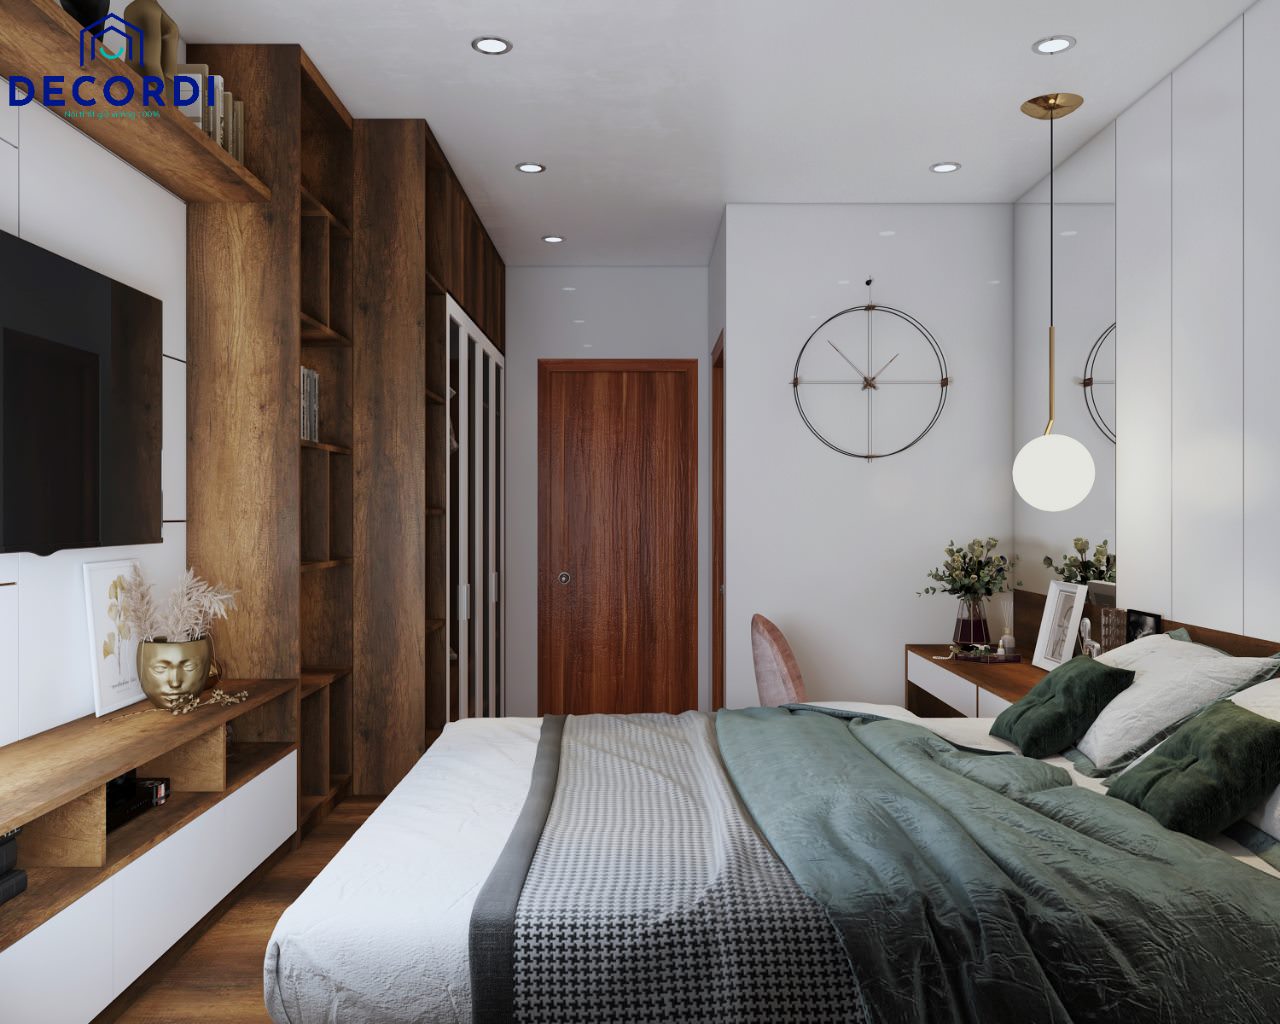 Hệ thống tủ trang trí lớn giúp lưu trữ và trang trí phòng ngủ được nhiều đồ lưu niệm, bên cạnh đó là vách ốp đầu giường gỗ, căn phòng ngủ trở nên ấm áp và tiện nghi